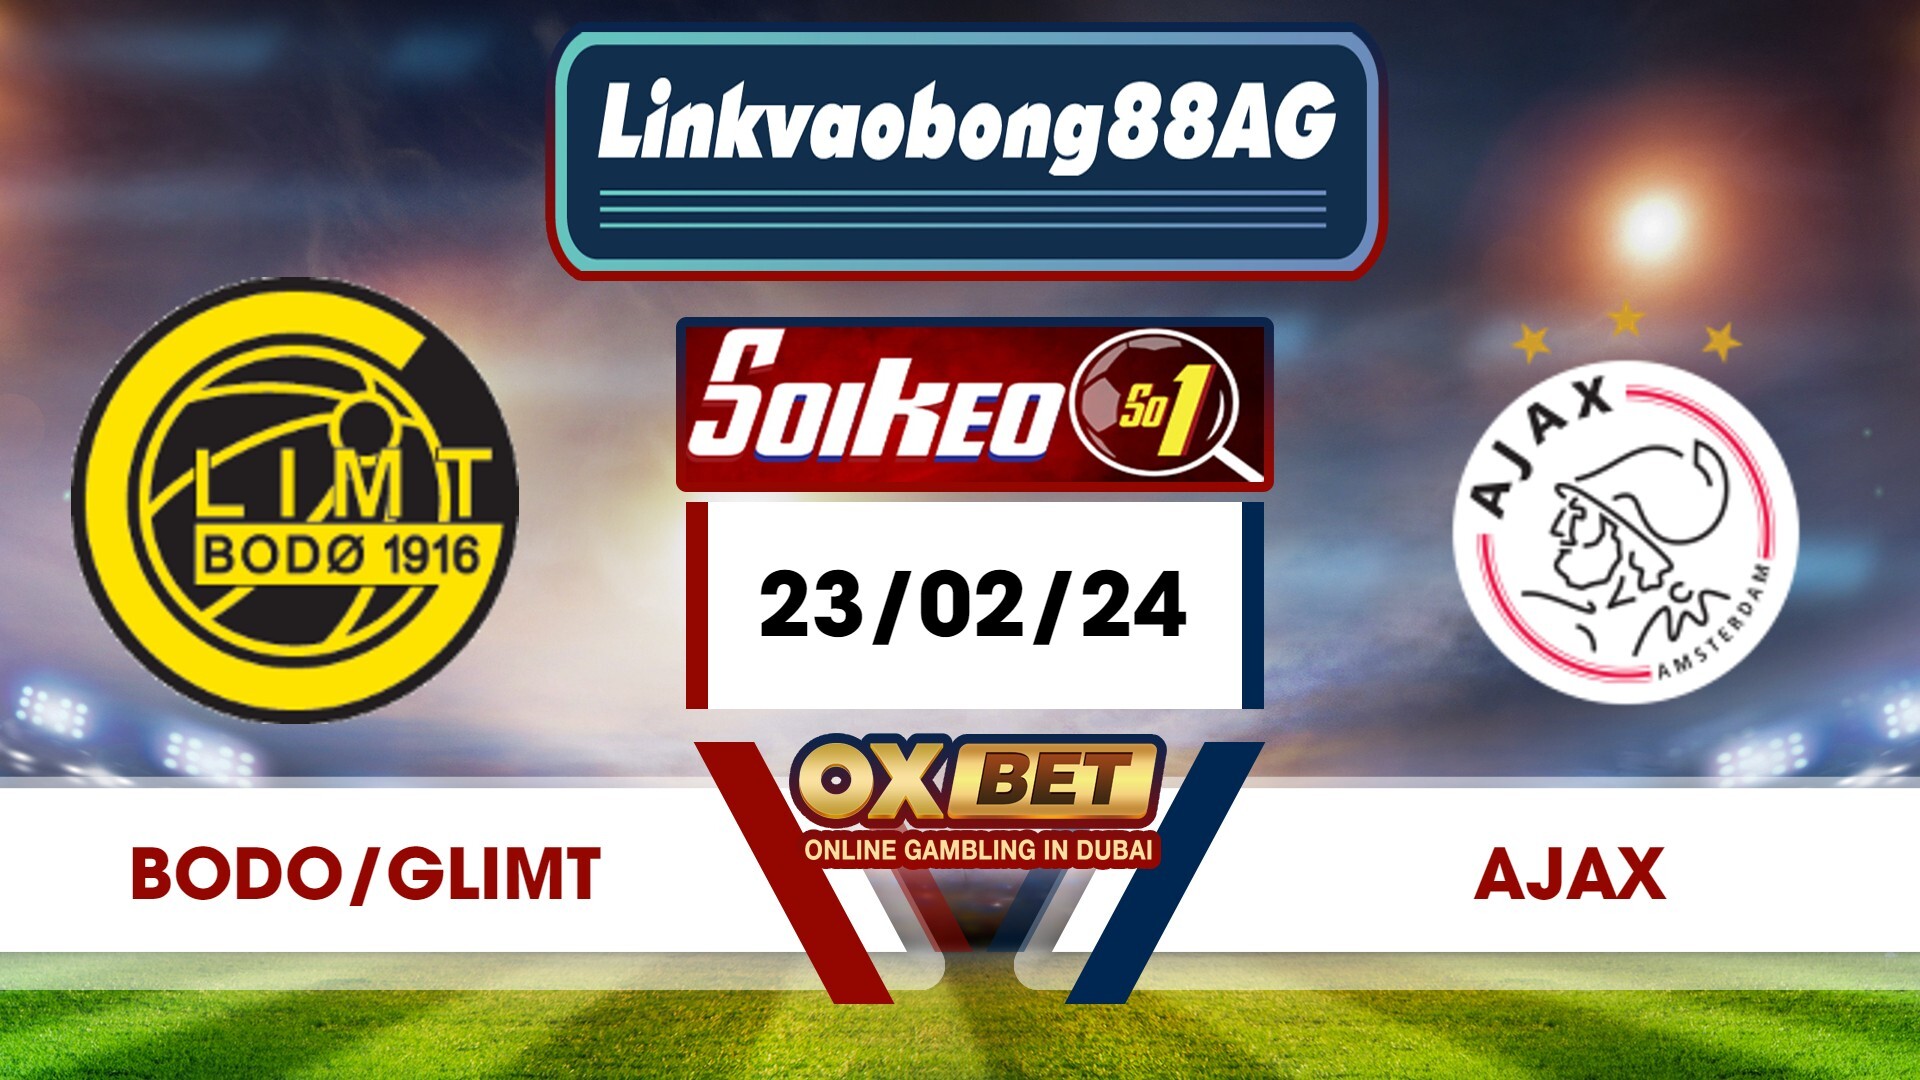 Soi kèo Bong88 Bodo/Glimt vs Ajax – 23/02/2024 – 00h45 sáng